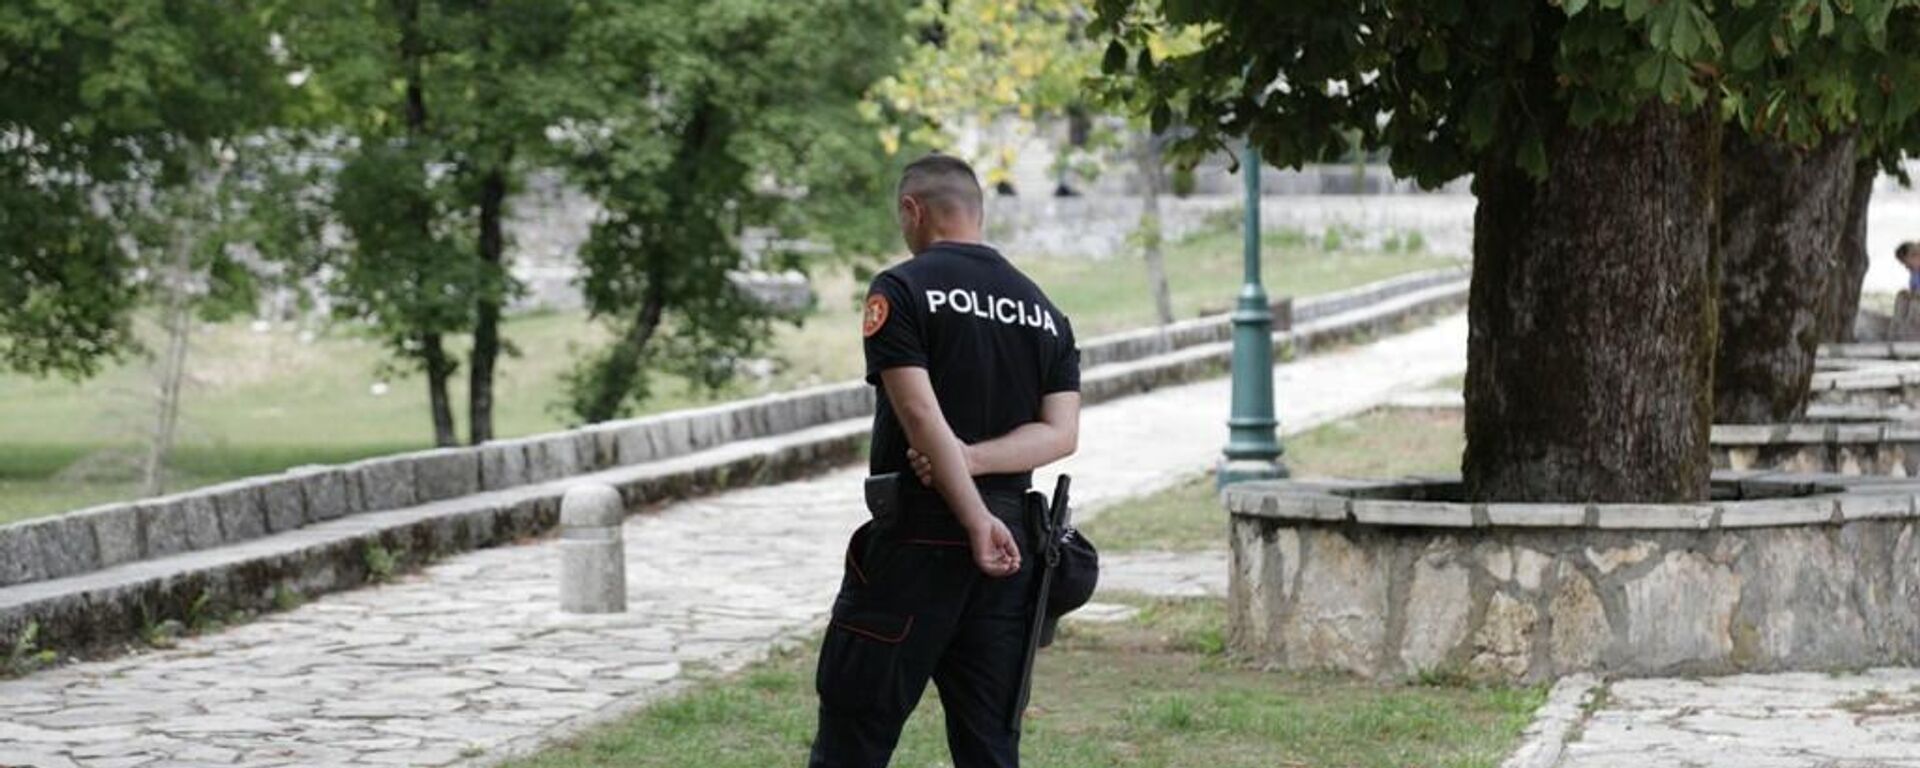 Полиција дежура у комплексу Цетињског манастира - Sputnik Србија, 1920, 17.09.2021